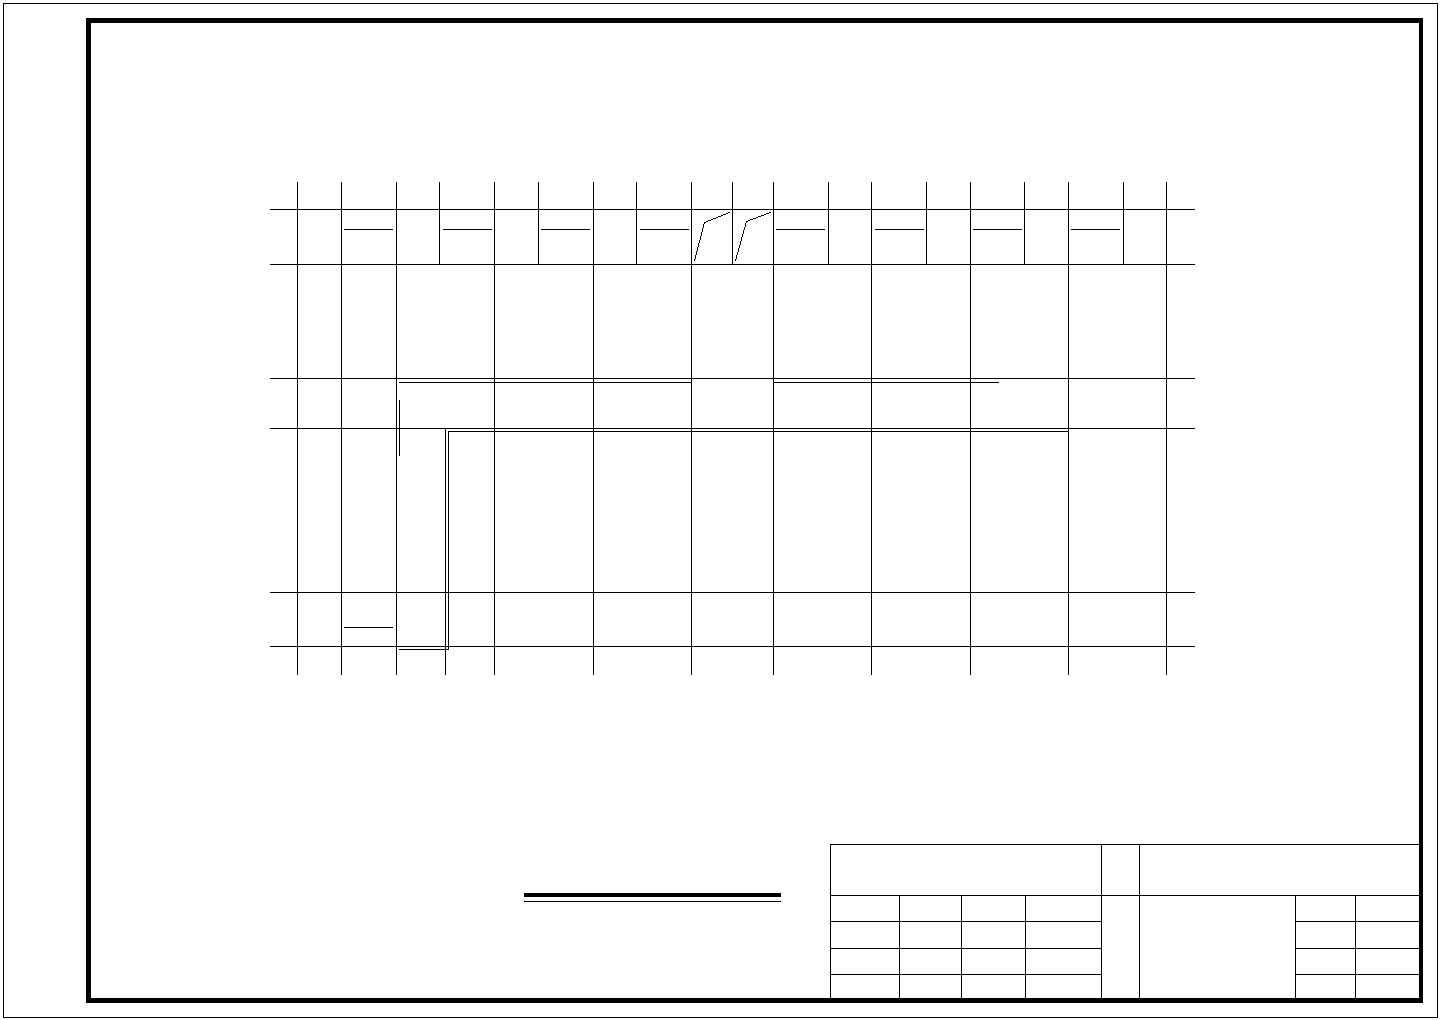 某31.8米x16米三层敬老院老年公寓CAD施工图(建筑+结构)图纸（各层平面图、立面图、剖面图、布置及配筋图）